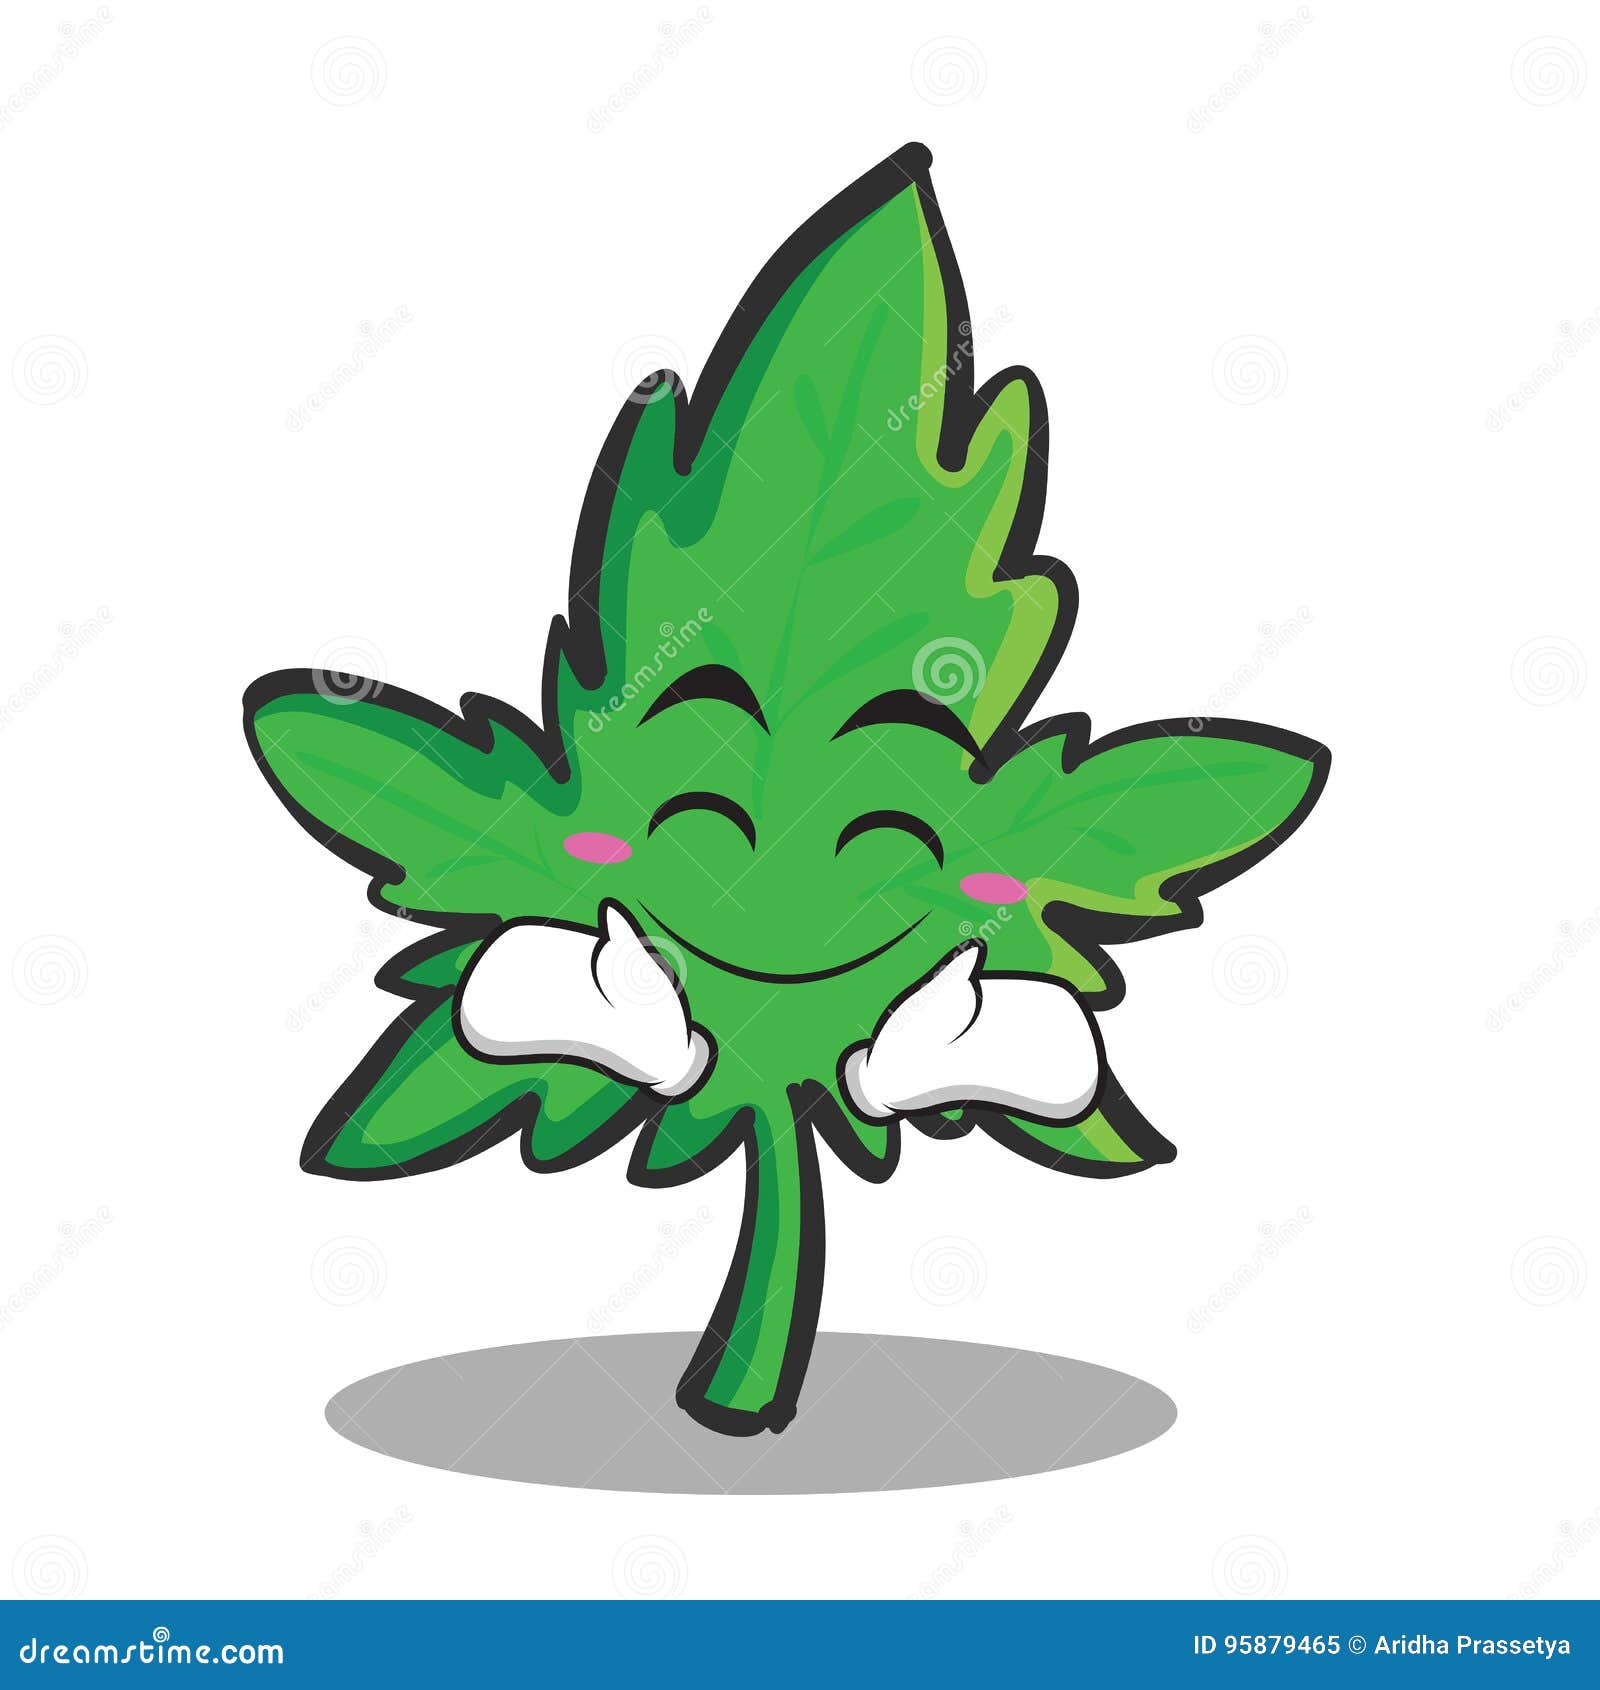 Happy Face Marijuana Character Cartoon Stock Vector - Illustration of ...